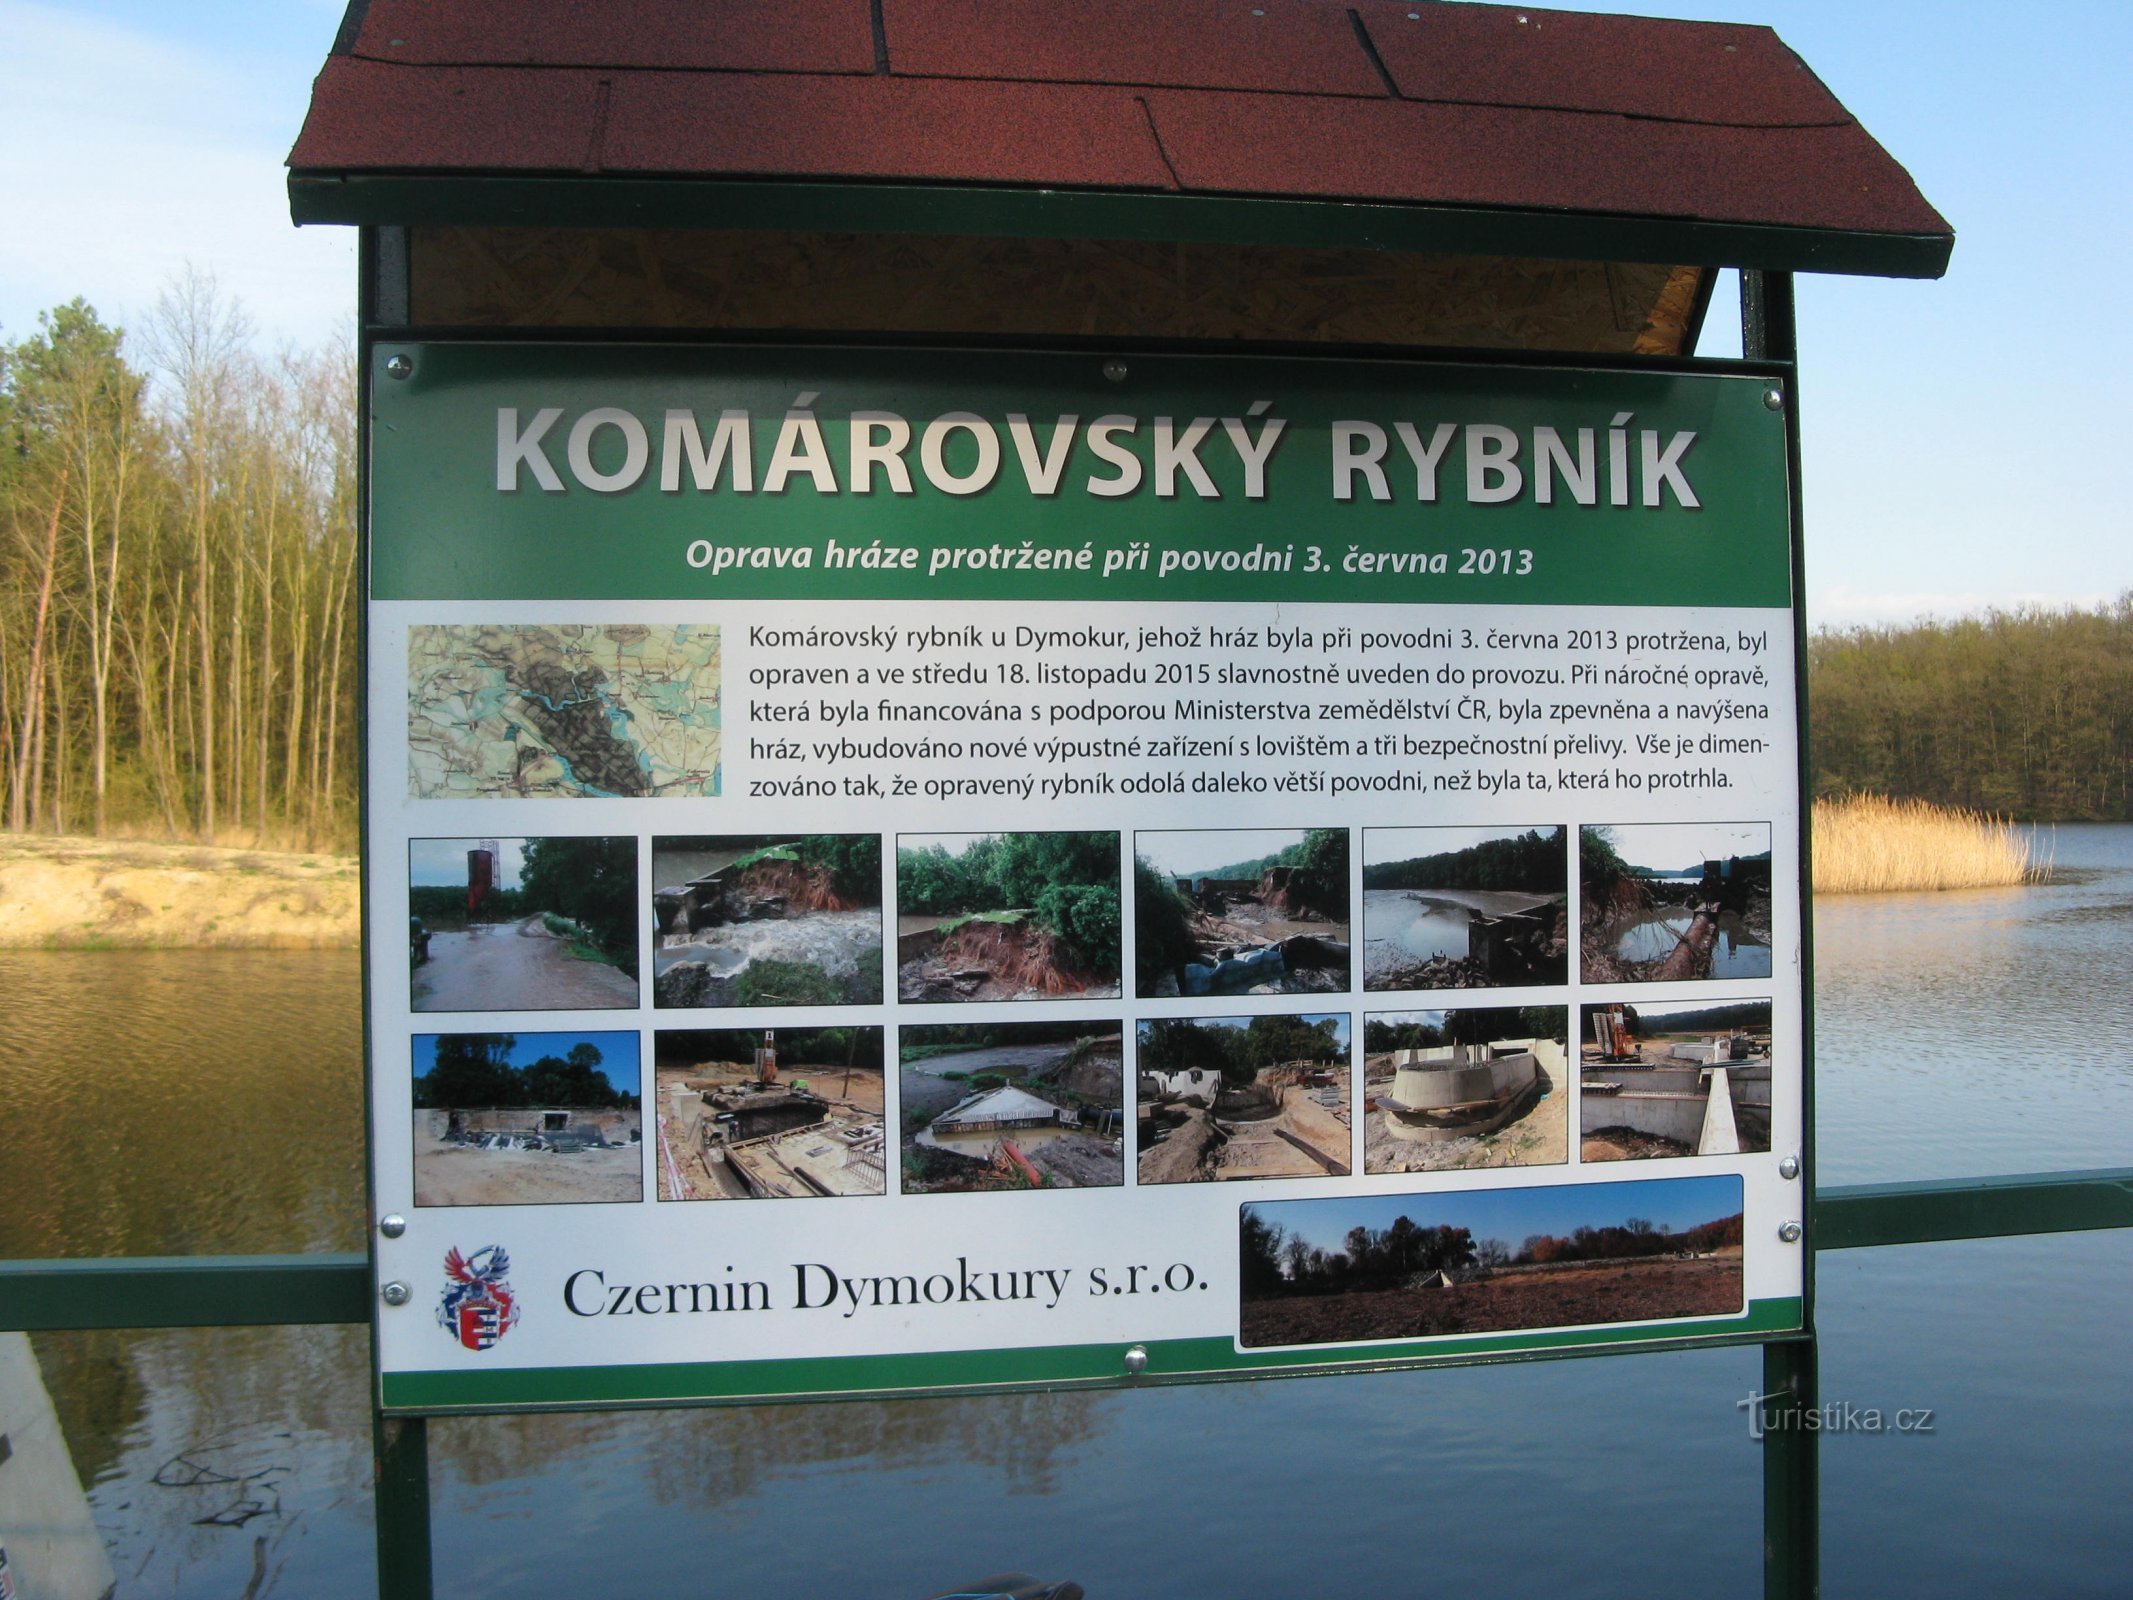 Komárovský pond near Svídnice in Nymburk